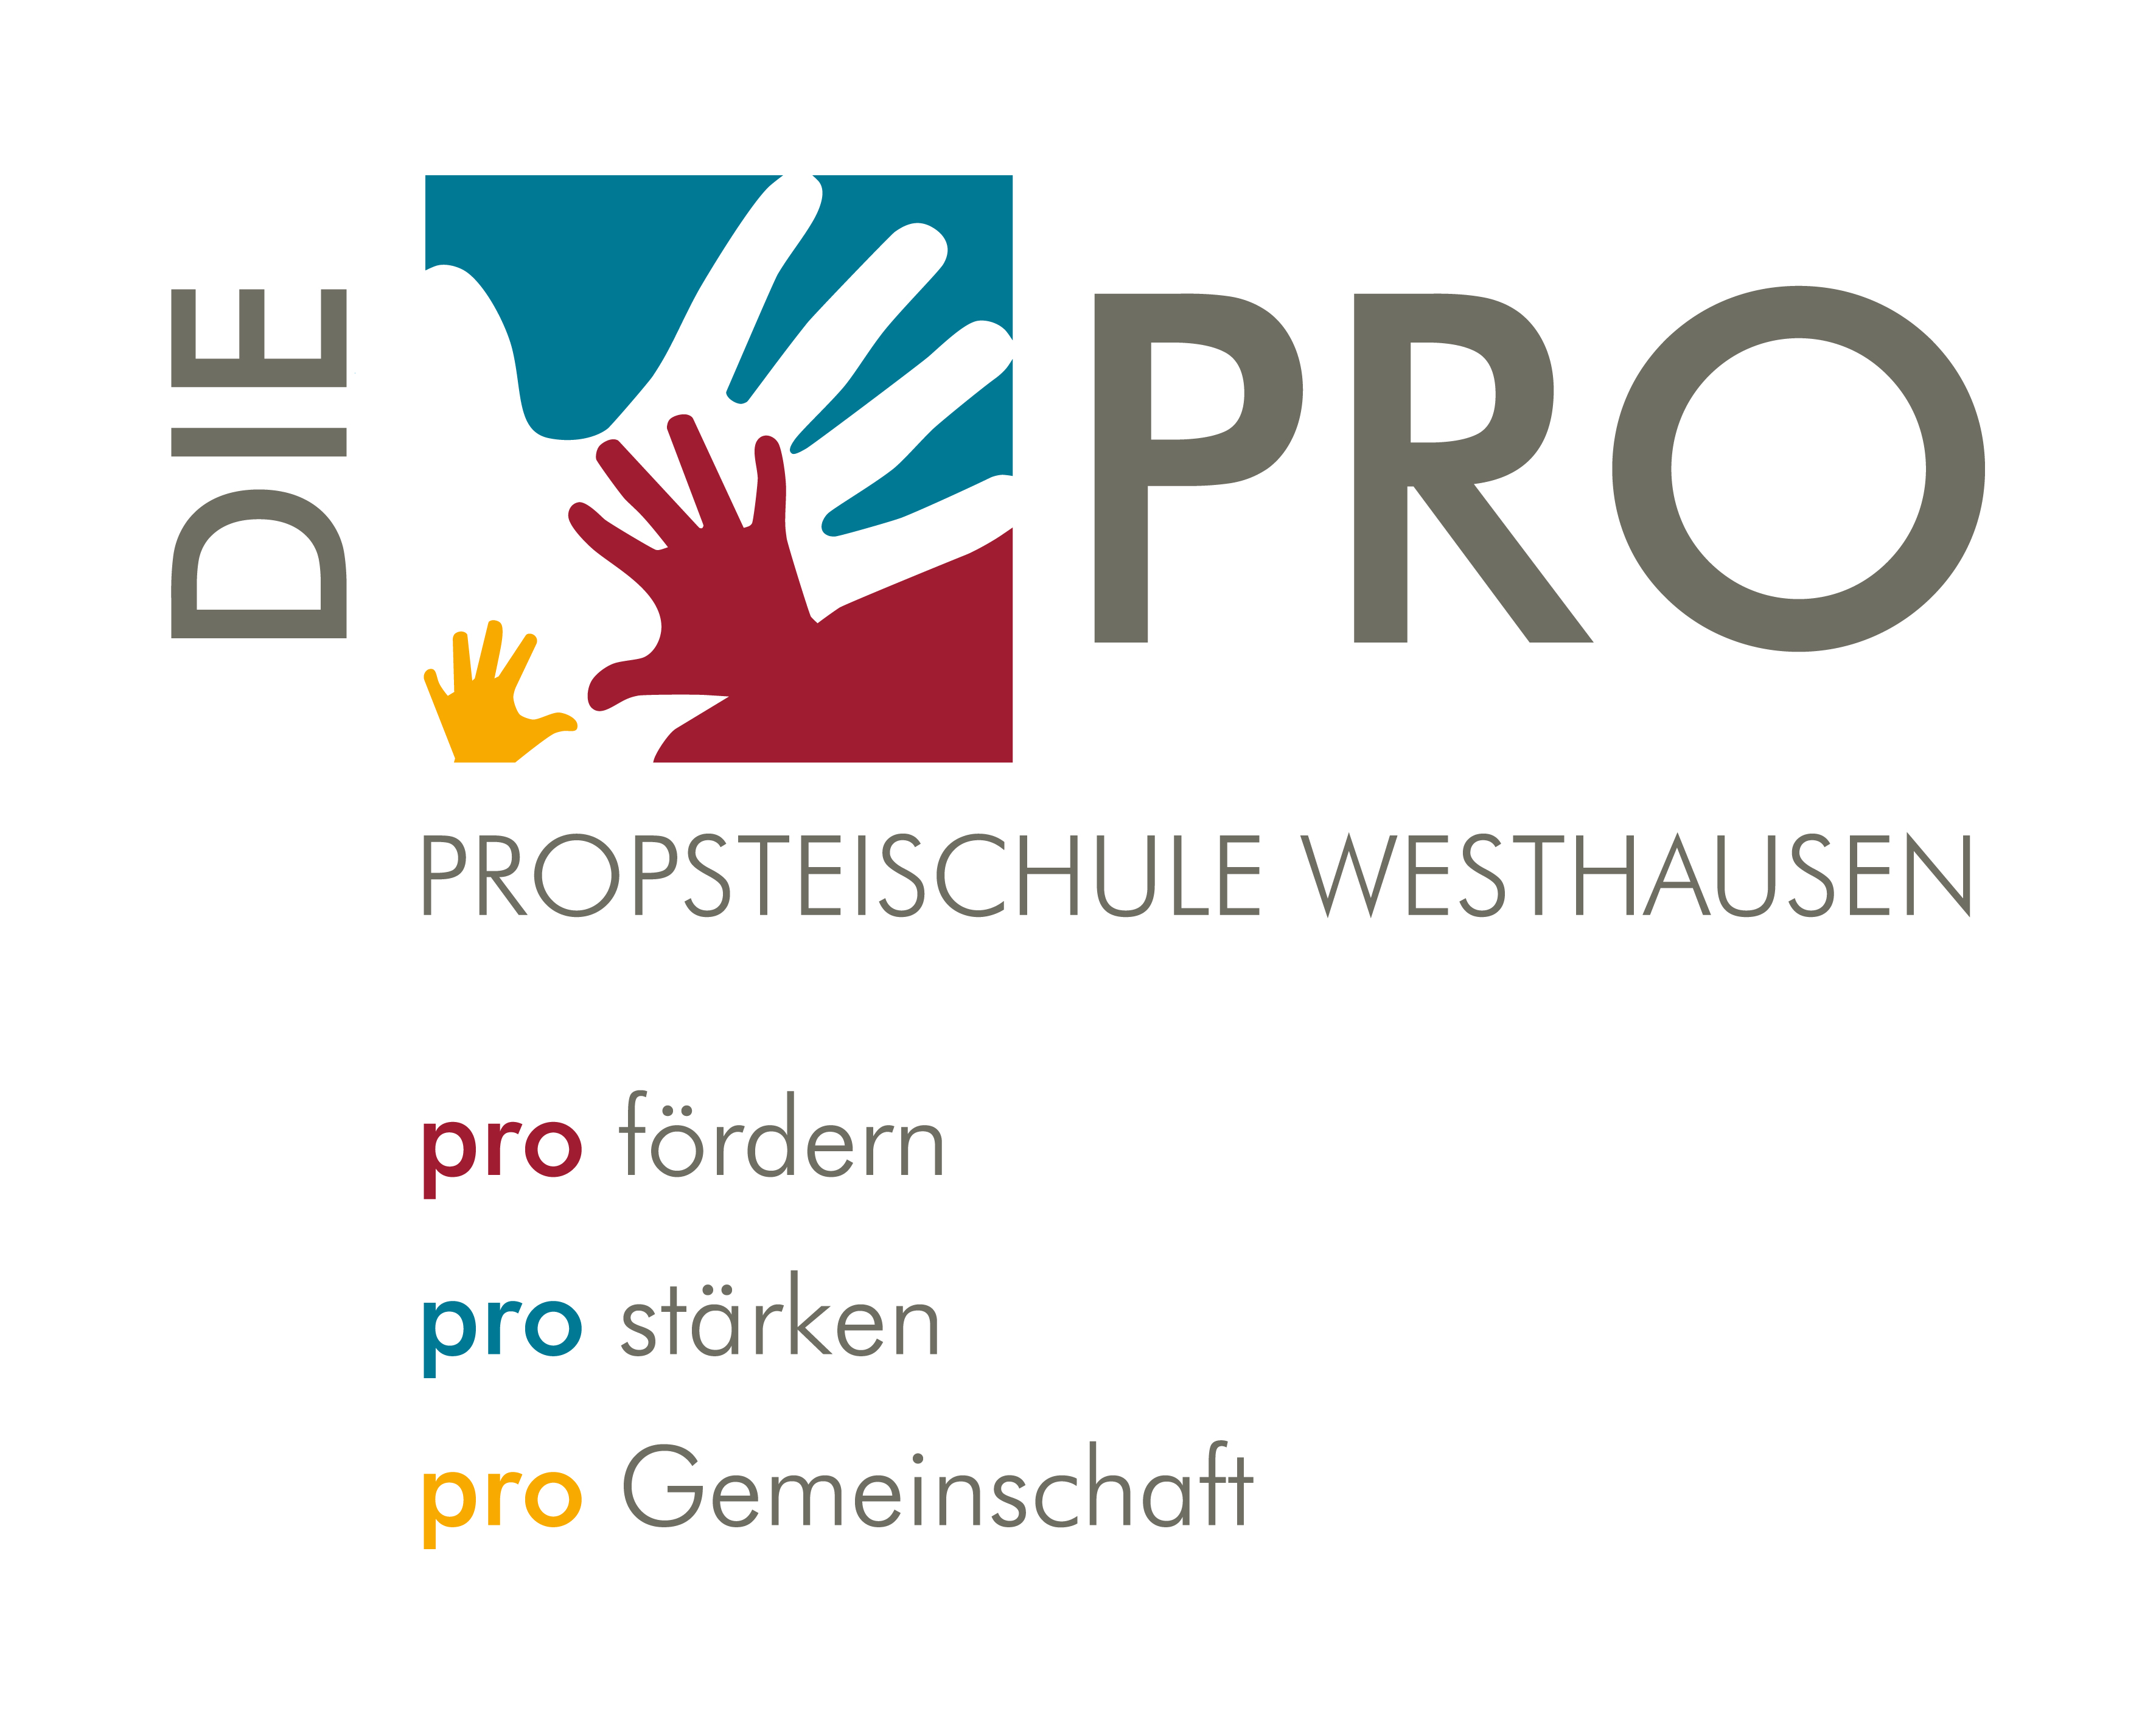 Propsteischule Westhausen